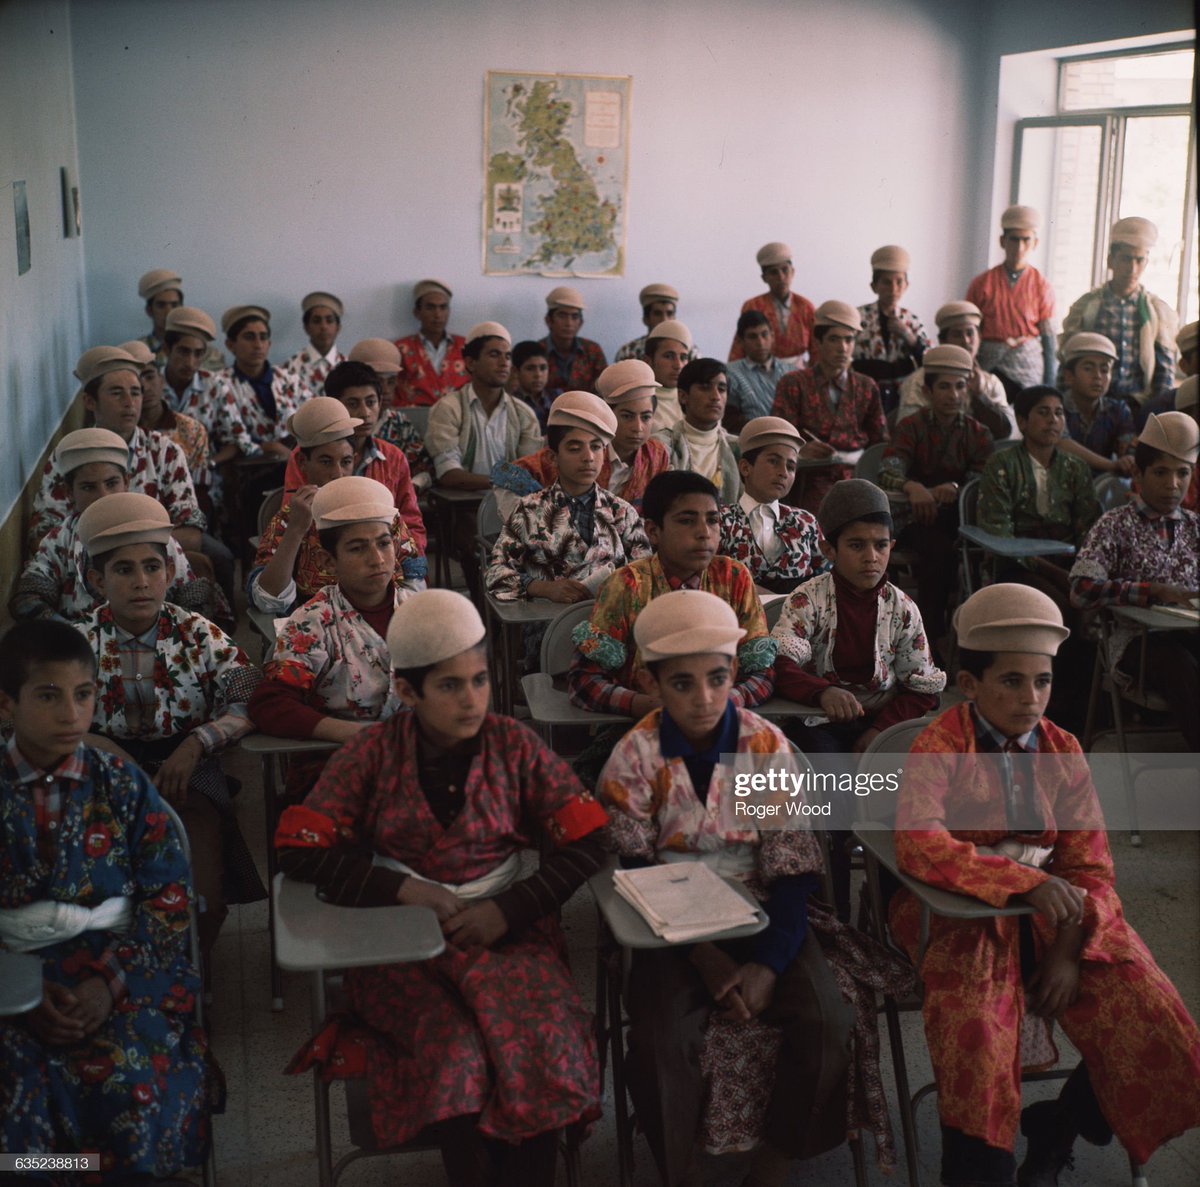 عکس جالب از کلاس درس ایل قشقایی در دهه 40